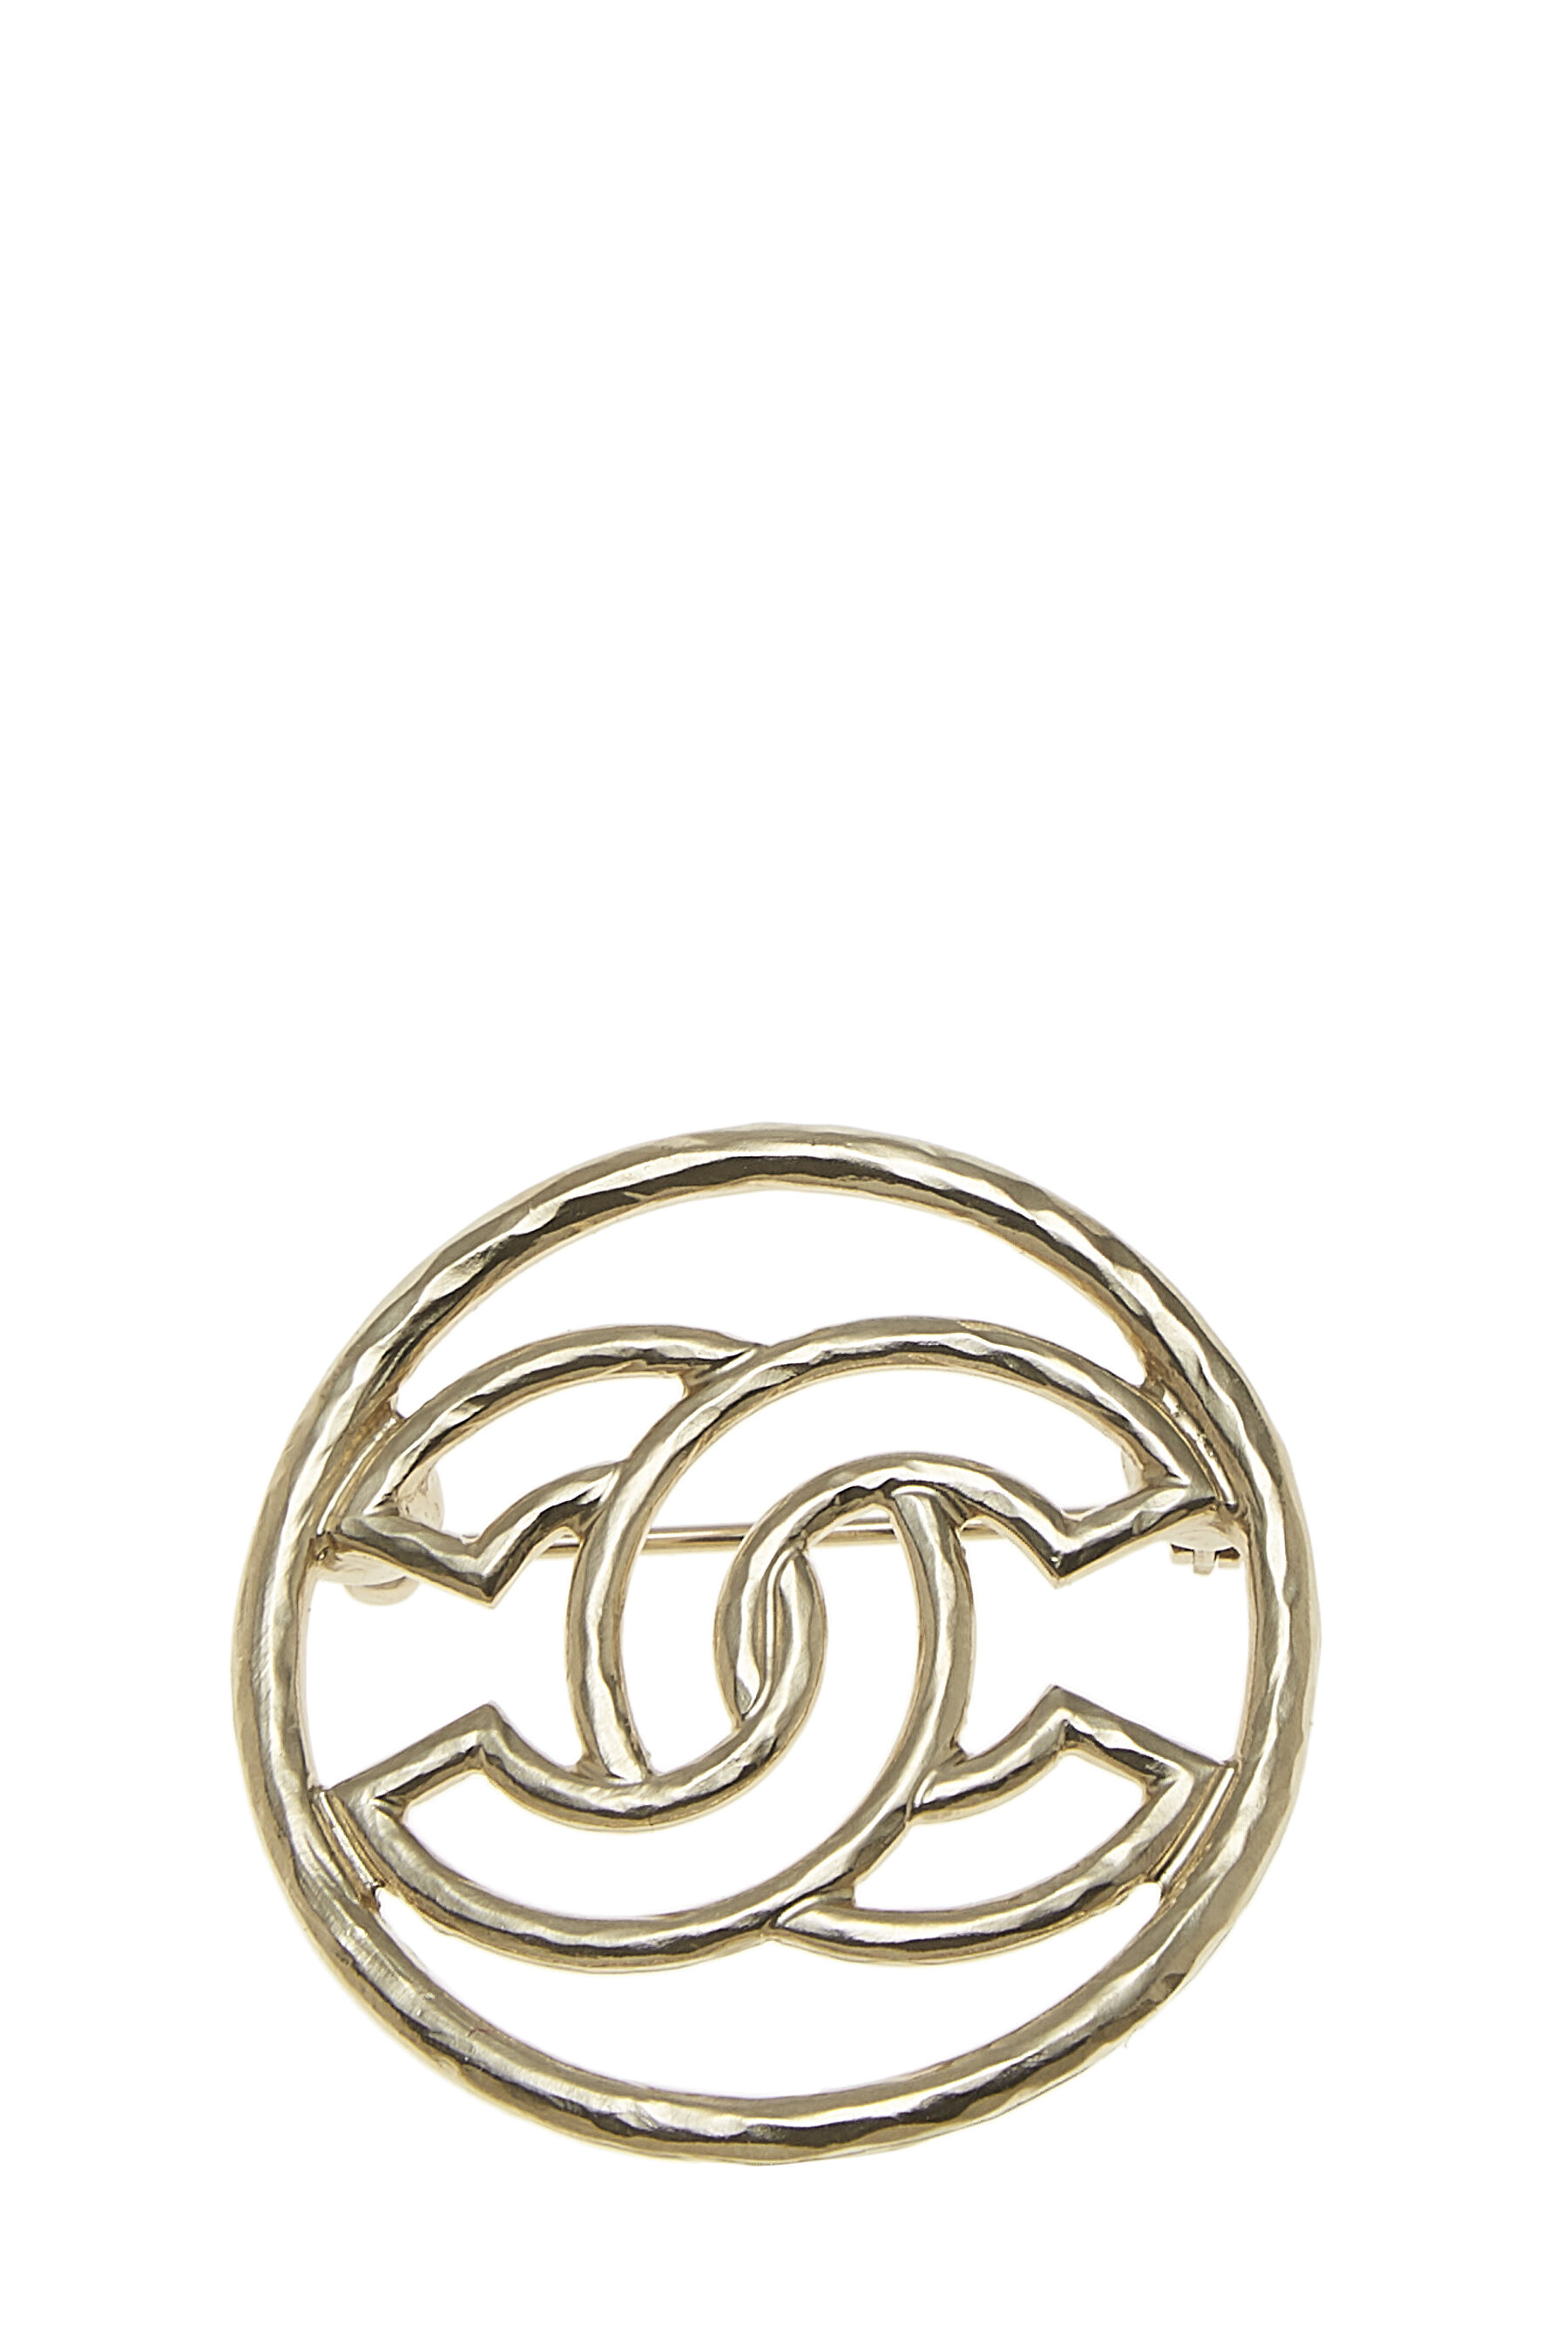 Chanel - Gold 'CC' Circle Pin